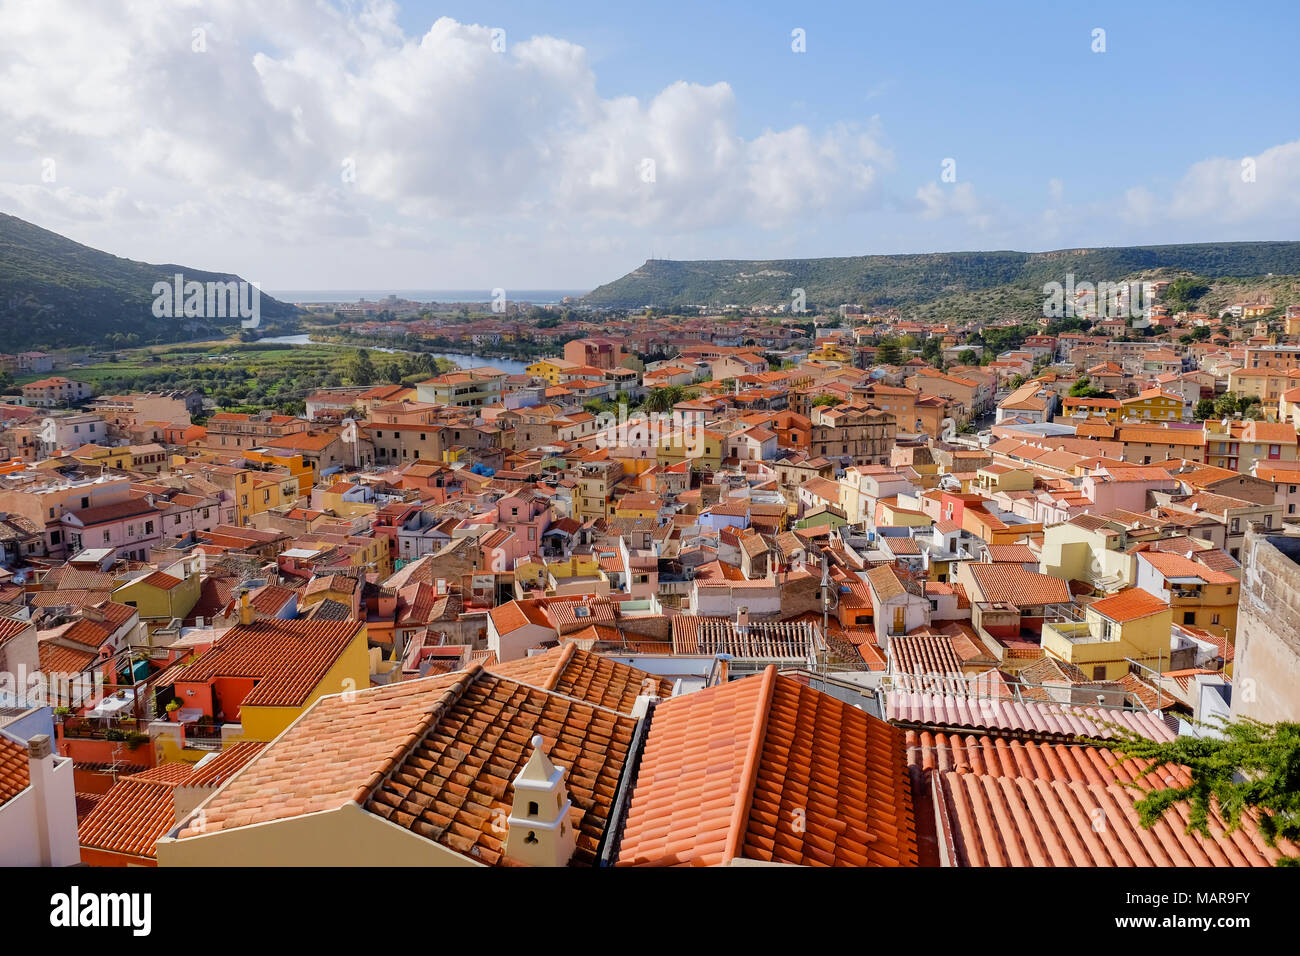 Vista panoramica sul case colorate con tetti di colore arancione a Bosa sardegna italia Foto Stock